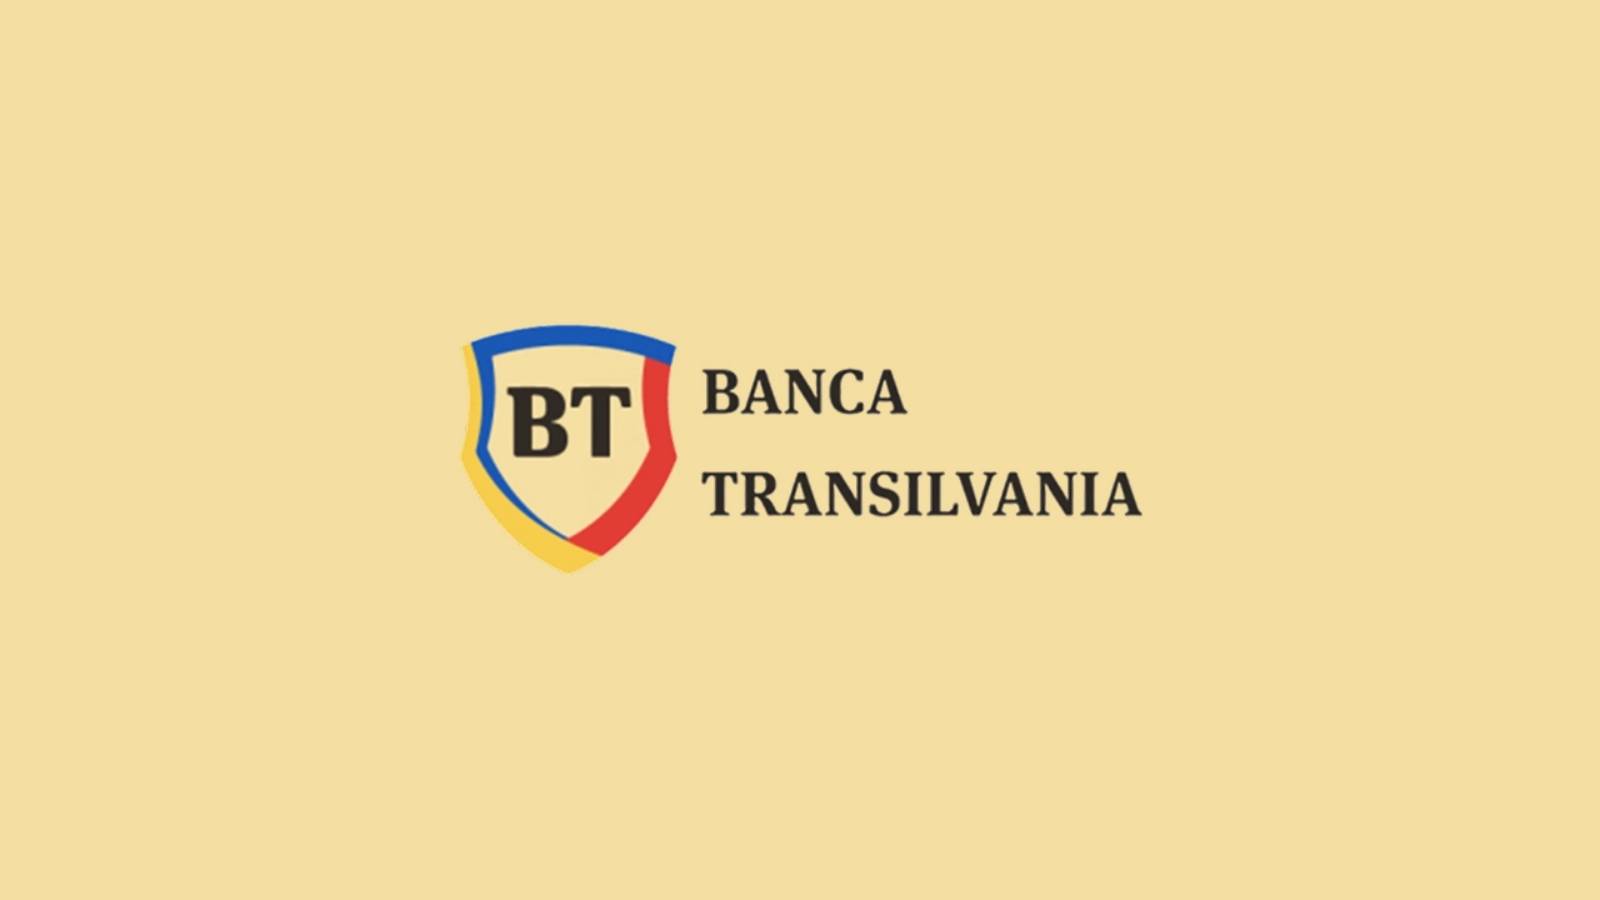 Offizielle Überraschung von BANCA Transilvania LAST MINUTE KOSTENLOS für rumänische Kunden